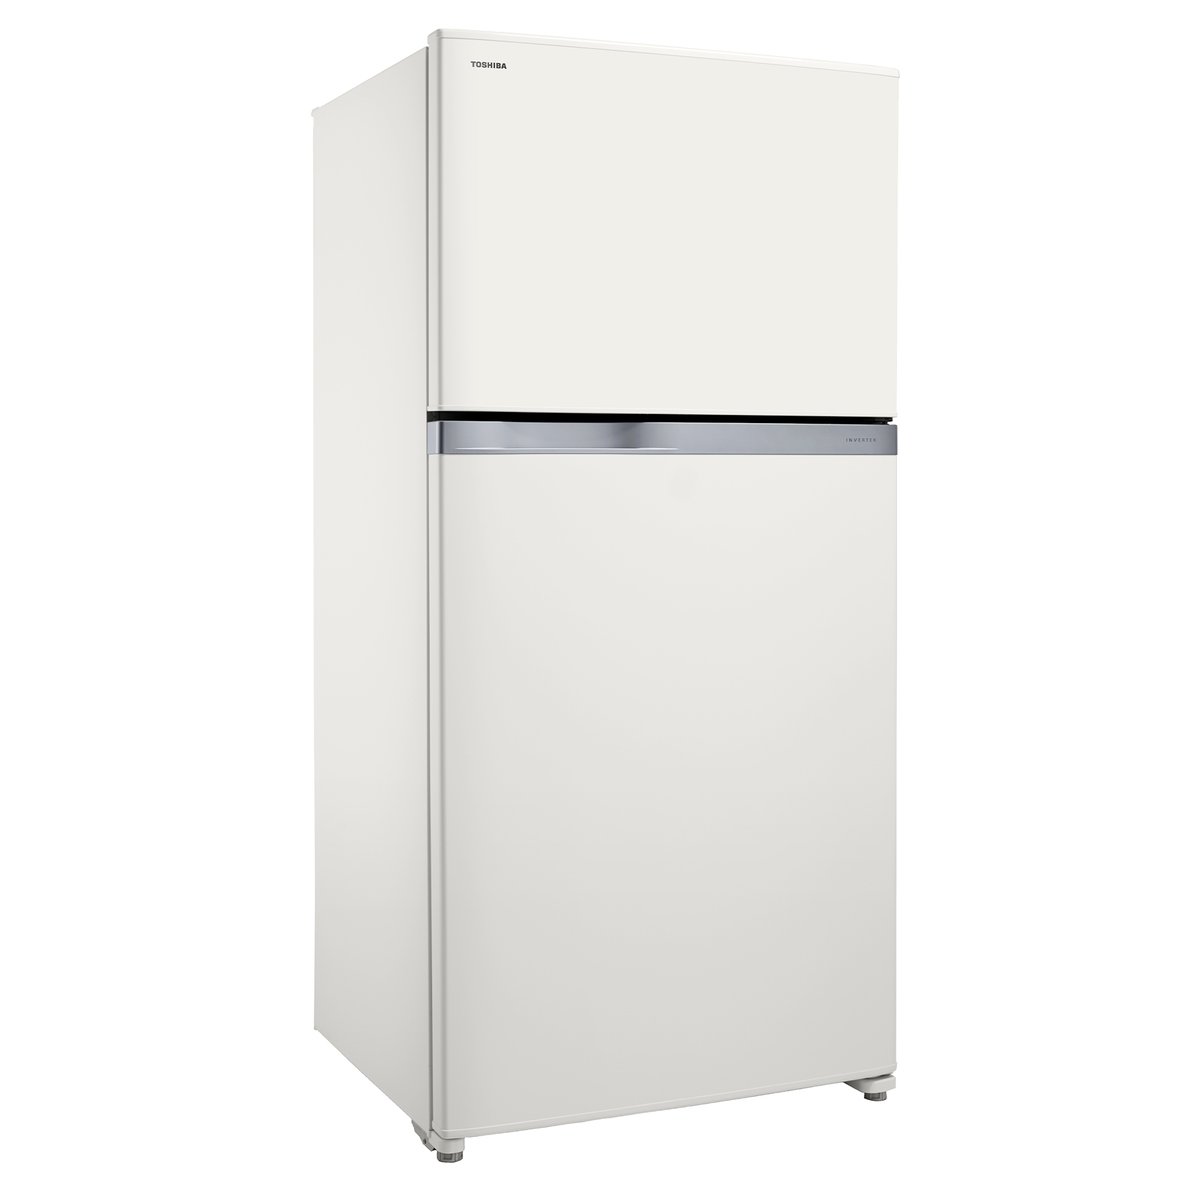 Buy Toshiba Double Door Refrigerator GR-A820U White Online at Best Price | Dbl.Door Refrigeratr | Lulu Kuwait in Kuwait